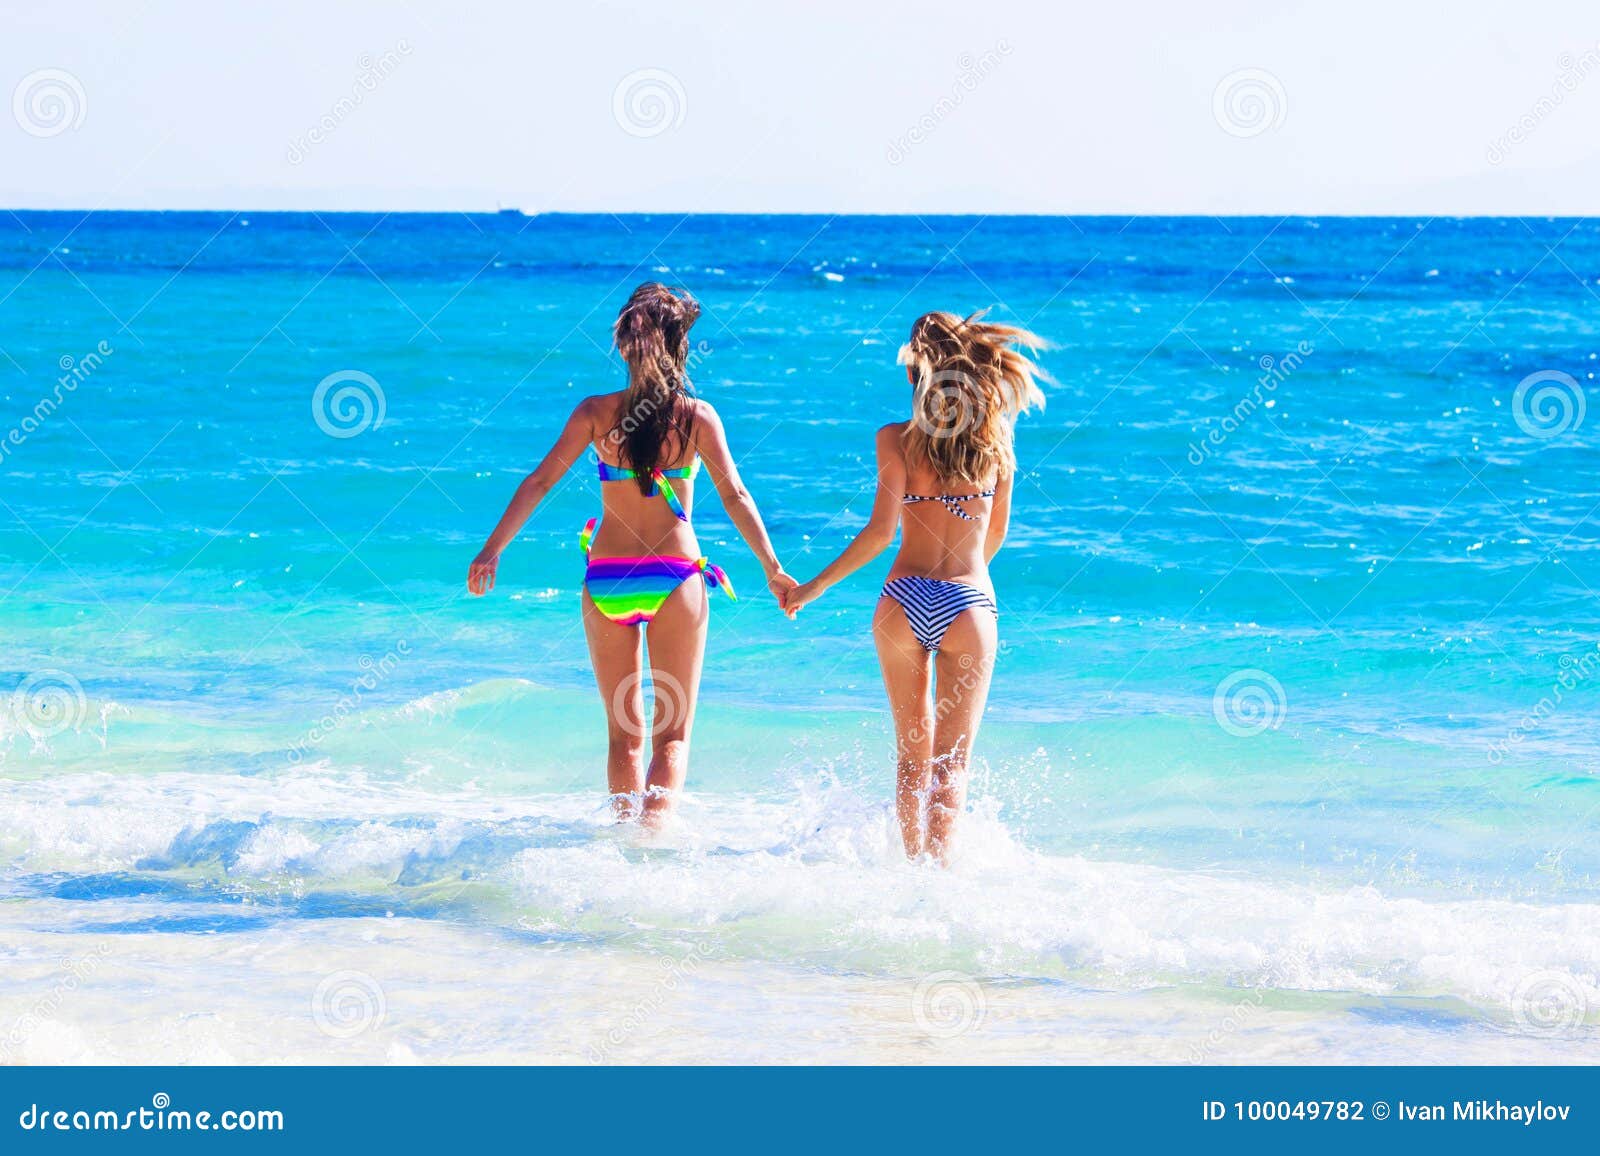 Κορίτσια που τρέχουν στη θάλασσα Στοκ Εικόνες - εικόνα από lifestyle,  bazaars: 100049782